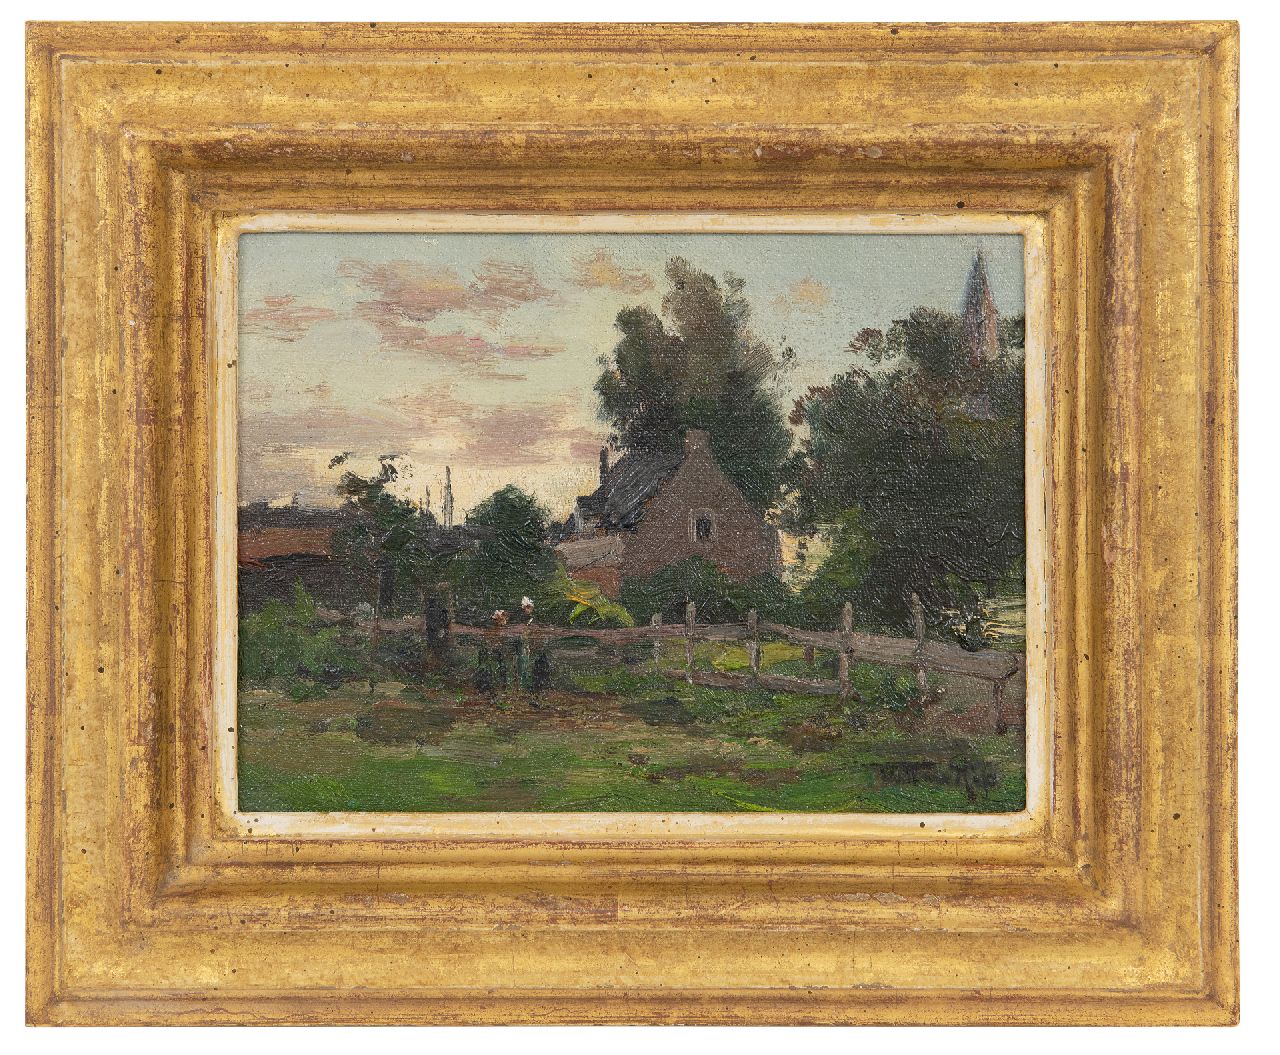 Rip W.C.  | 'Willem' Cornelis Rip | Schilderijen te koop aangeboden | Avondstond bij Hillesluis, olieverf op doek op paneel 14,4 x 19,3 cm, gesigneerd rechtsonder